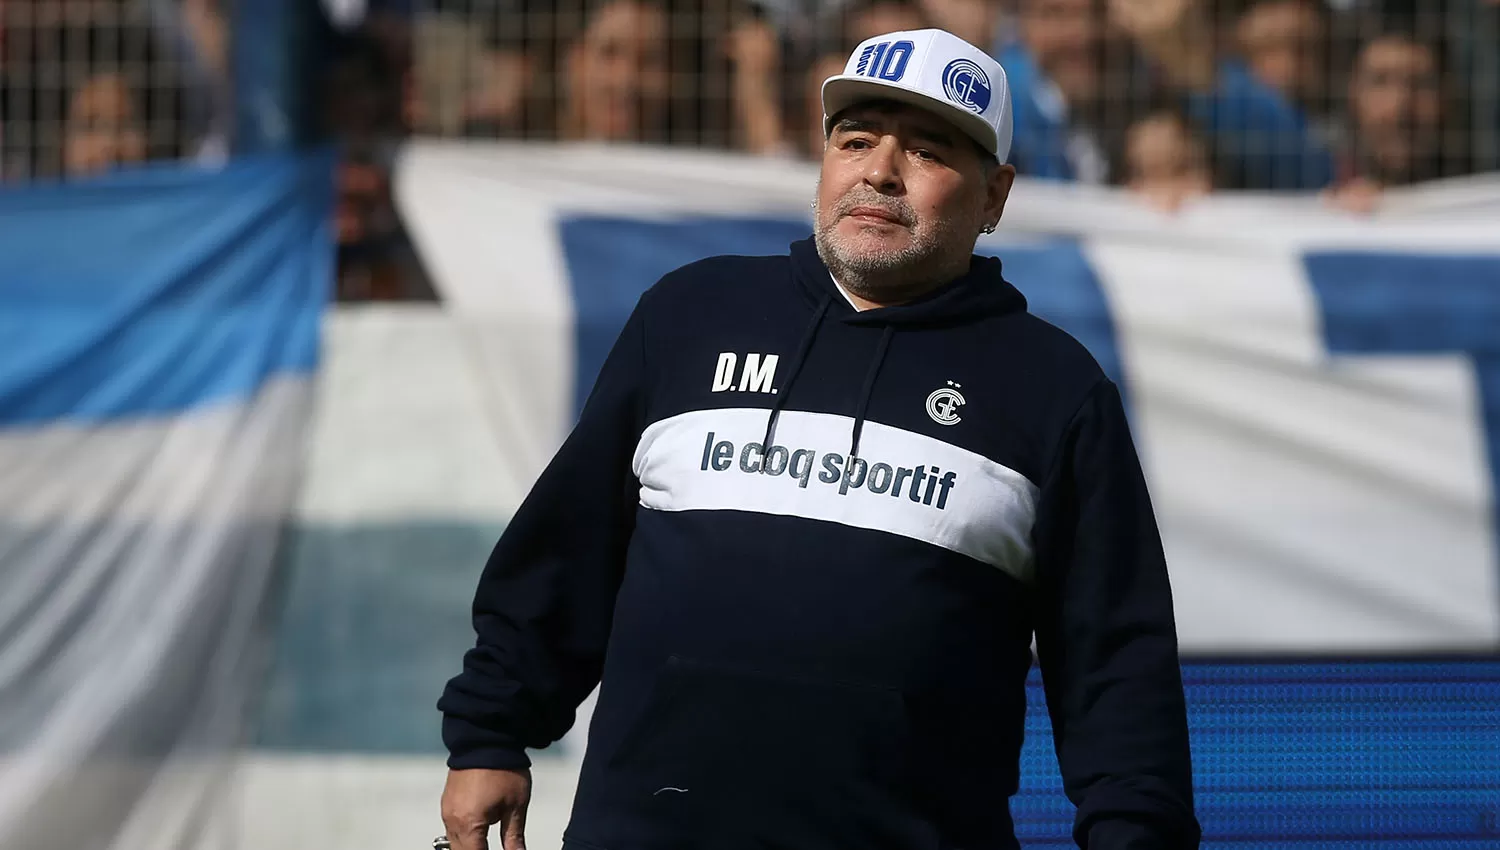 SEMANA CRITICA. Después de anunciar su salida, Maradona dio marcha atrás y dirigirá hoy al Lobo.